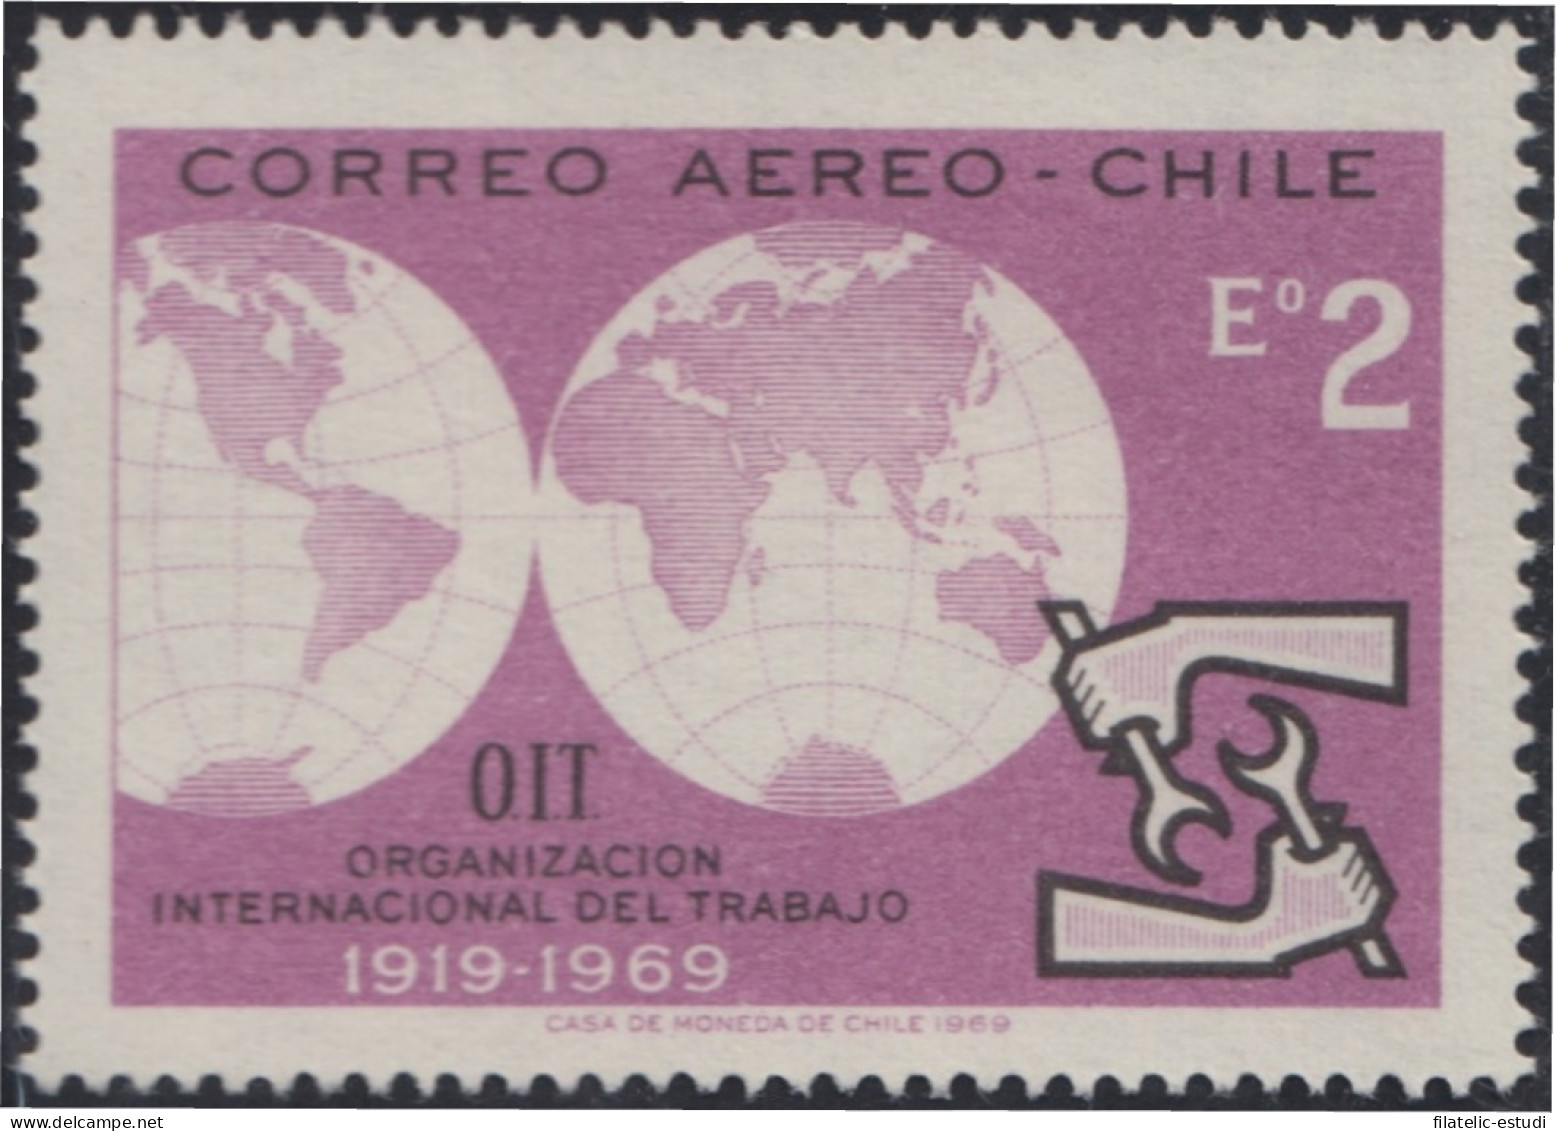 Chile A- 262 1969 OIT Organización Internacional Del Trabajo MNH - Chili